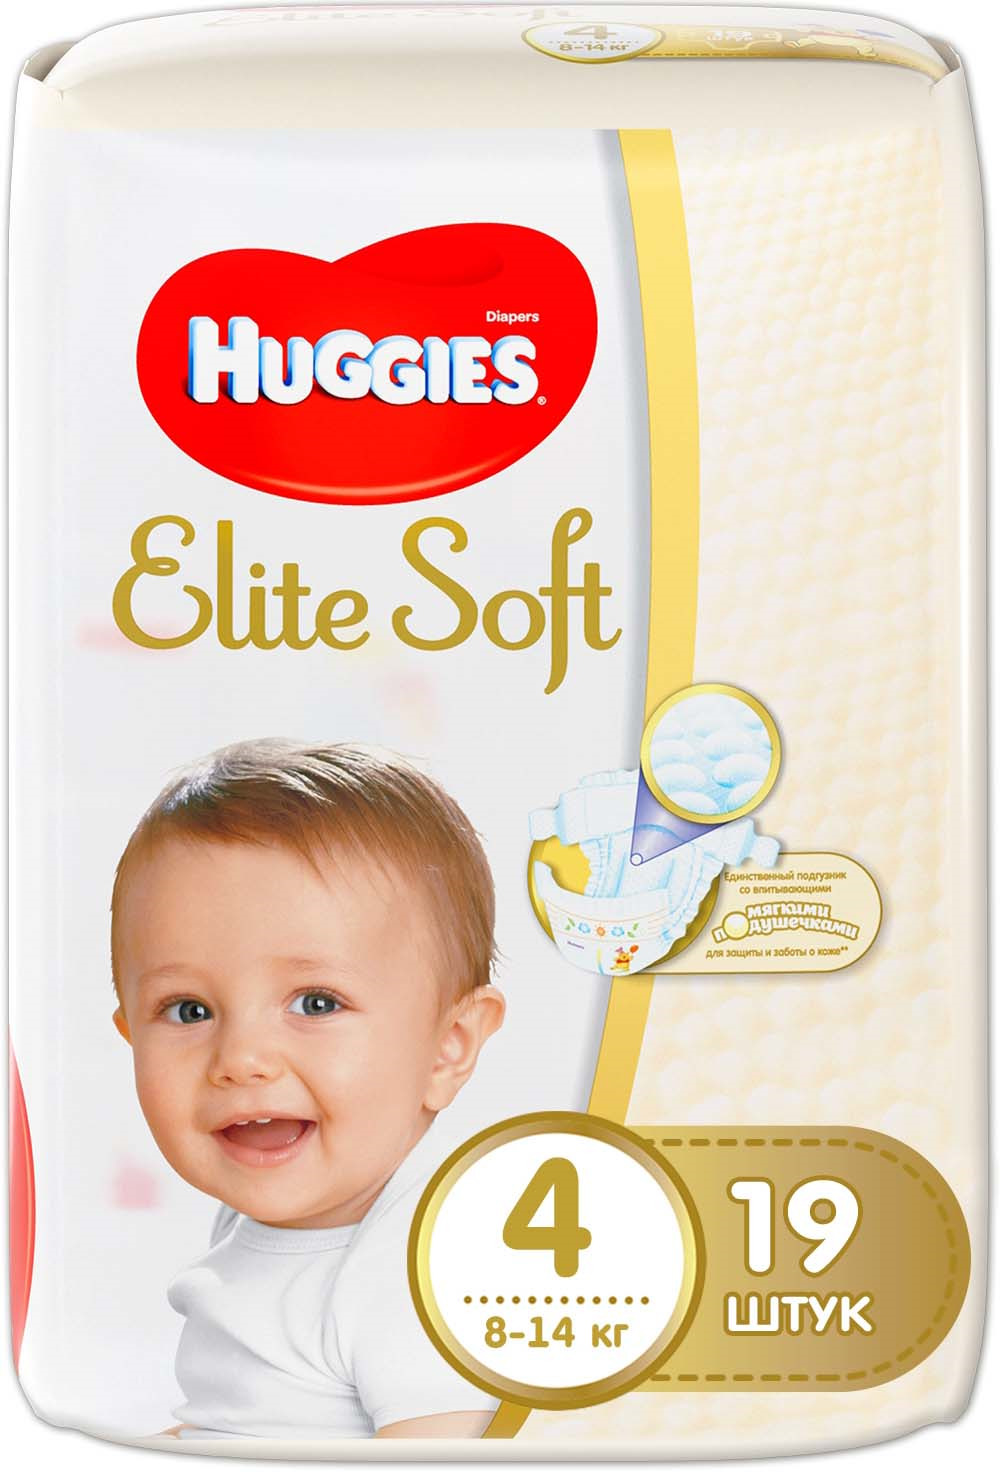 фото Huggies Подгузники Elite Soft 8-14 кг ( размер 4) 19 шт